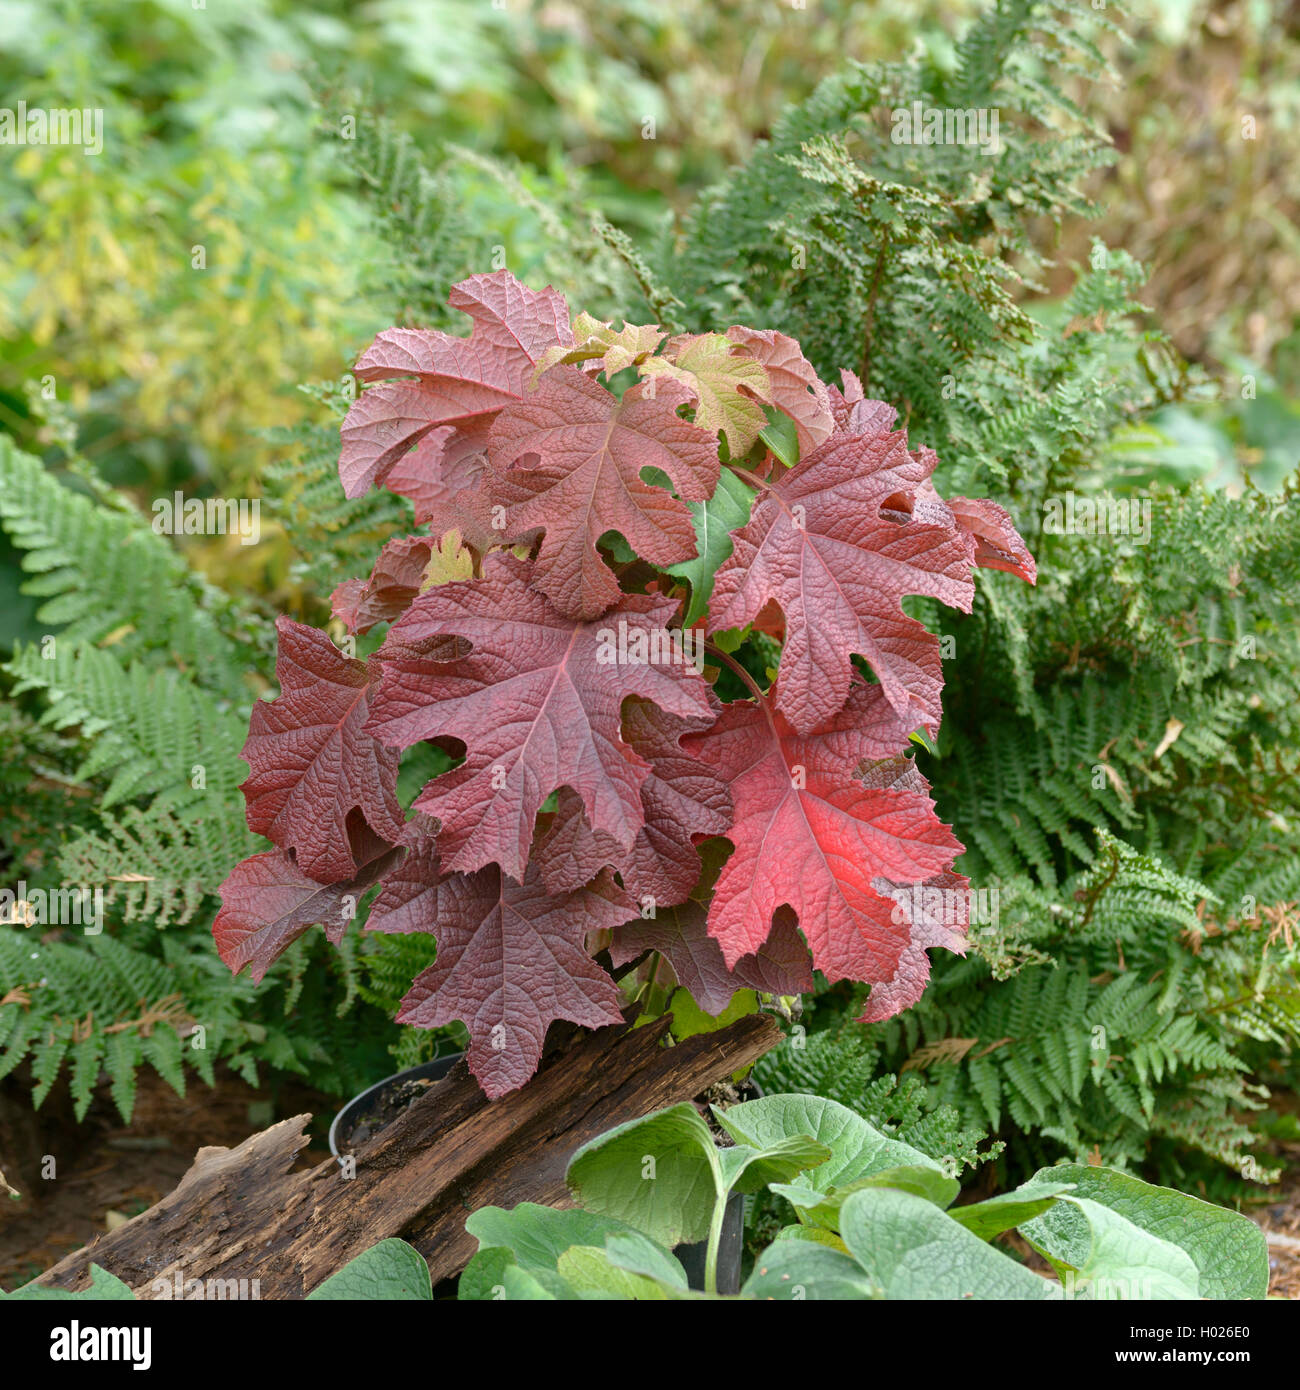 Hortensia à feuilles de chêne Hydrangea quercifolia (chaussons 'Ruby', Hydrangea quercifolia rubis), le cultivar Rubis, Allemagne Banque D'Images